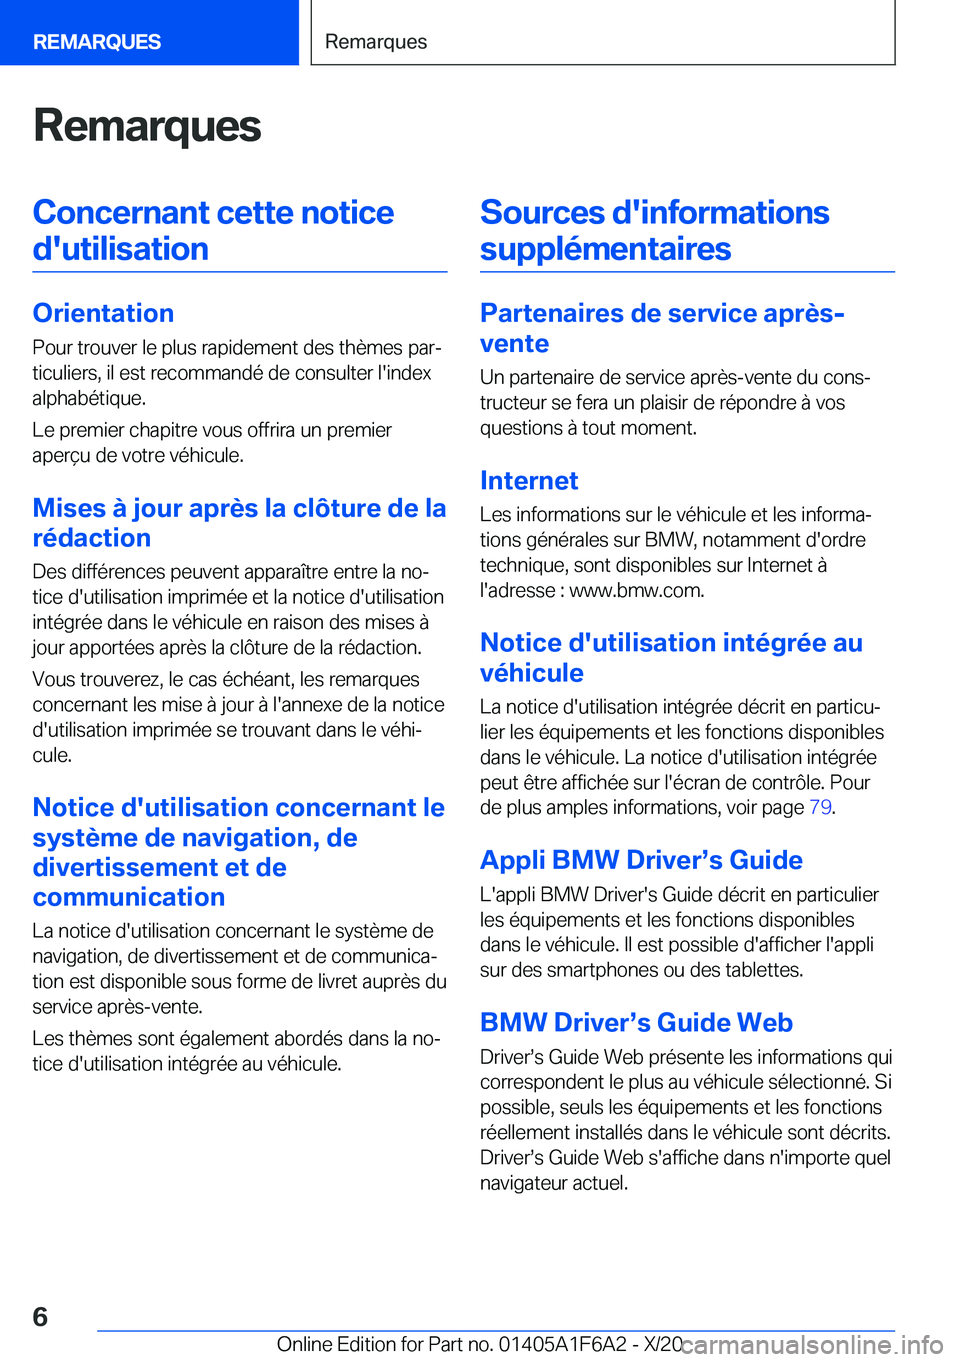 BMW X4 2021  Notices Demploi (in French) �R�e�m�a�r�q�u�e�s�C�o�n�c�e�r�n�a�n�t��c�e�t�t�e��n�o�t�i�c�e�d�'�u�t�i�l�i�s�a�t�i�o�n
�O�r�i�e�n�t�a�t�i�o�n �P�o�u�r��t�r�o�u�v�e�r��l�e��p�l�u�s��r�a�p�i�d�e�m�e�n�t��d�e�s��t�h�è�m�